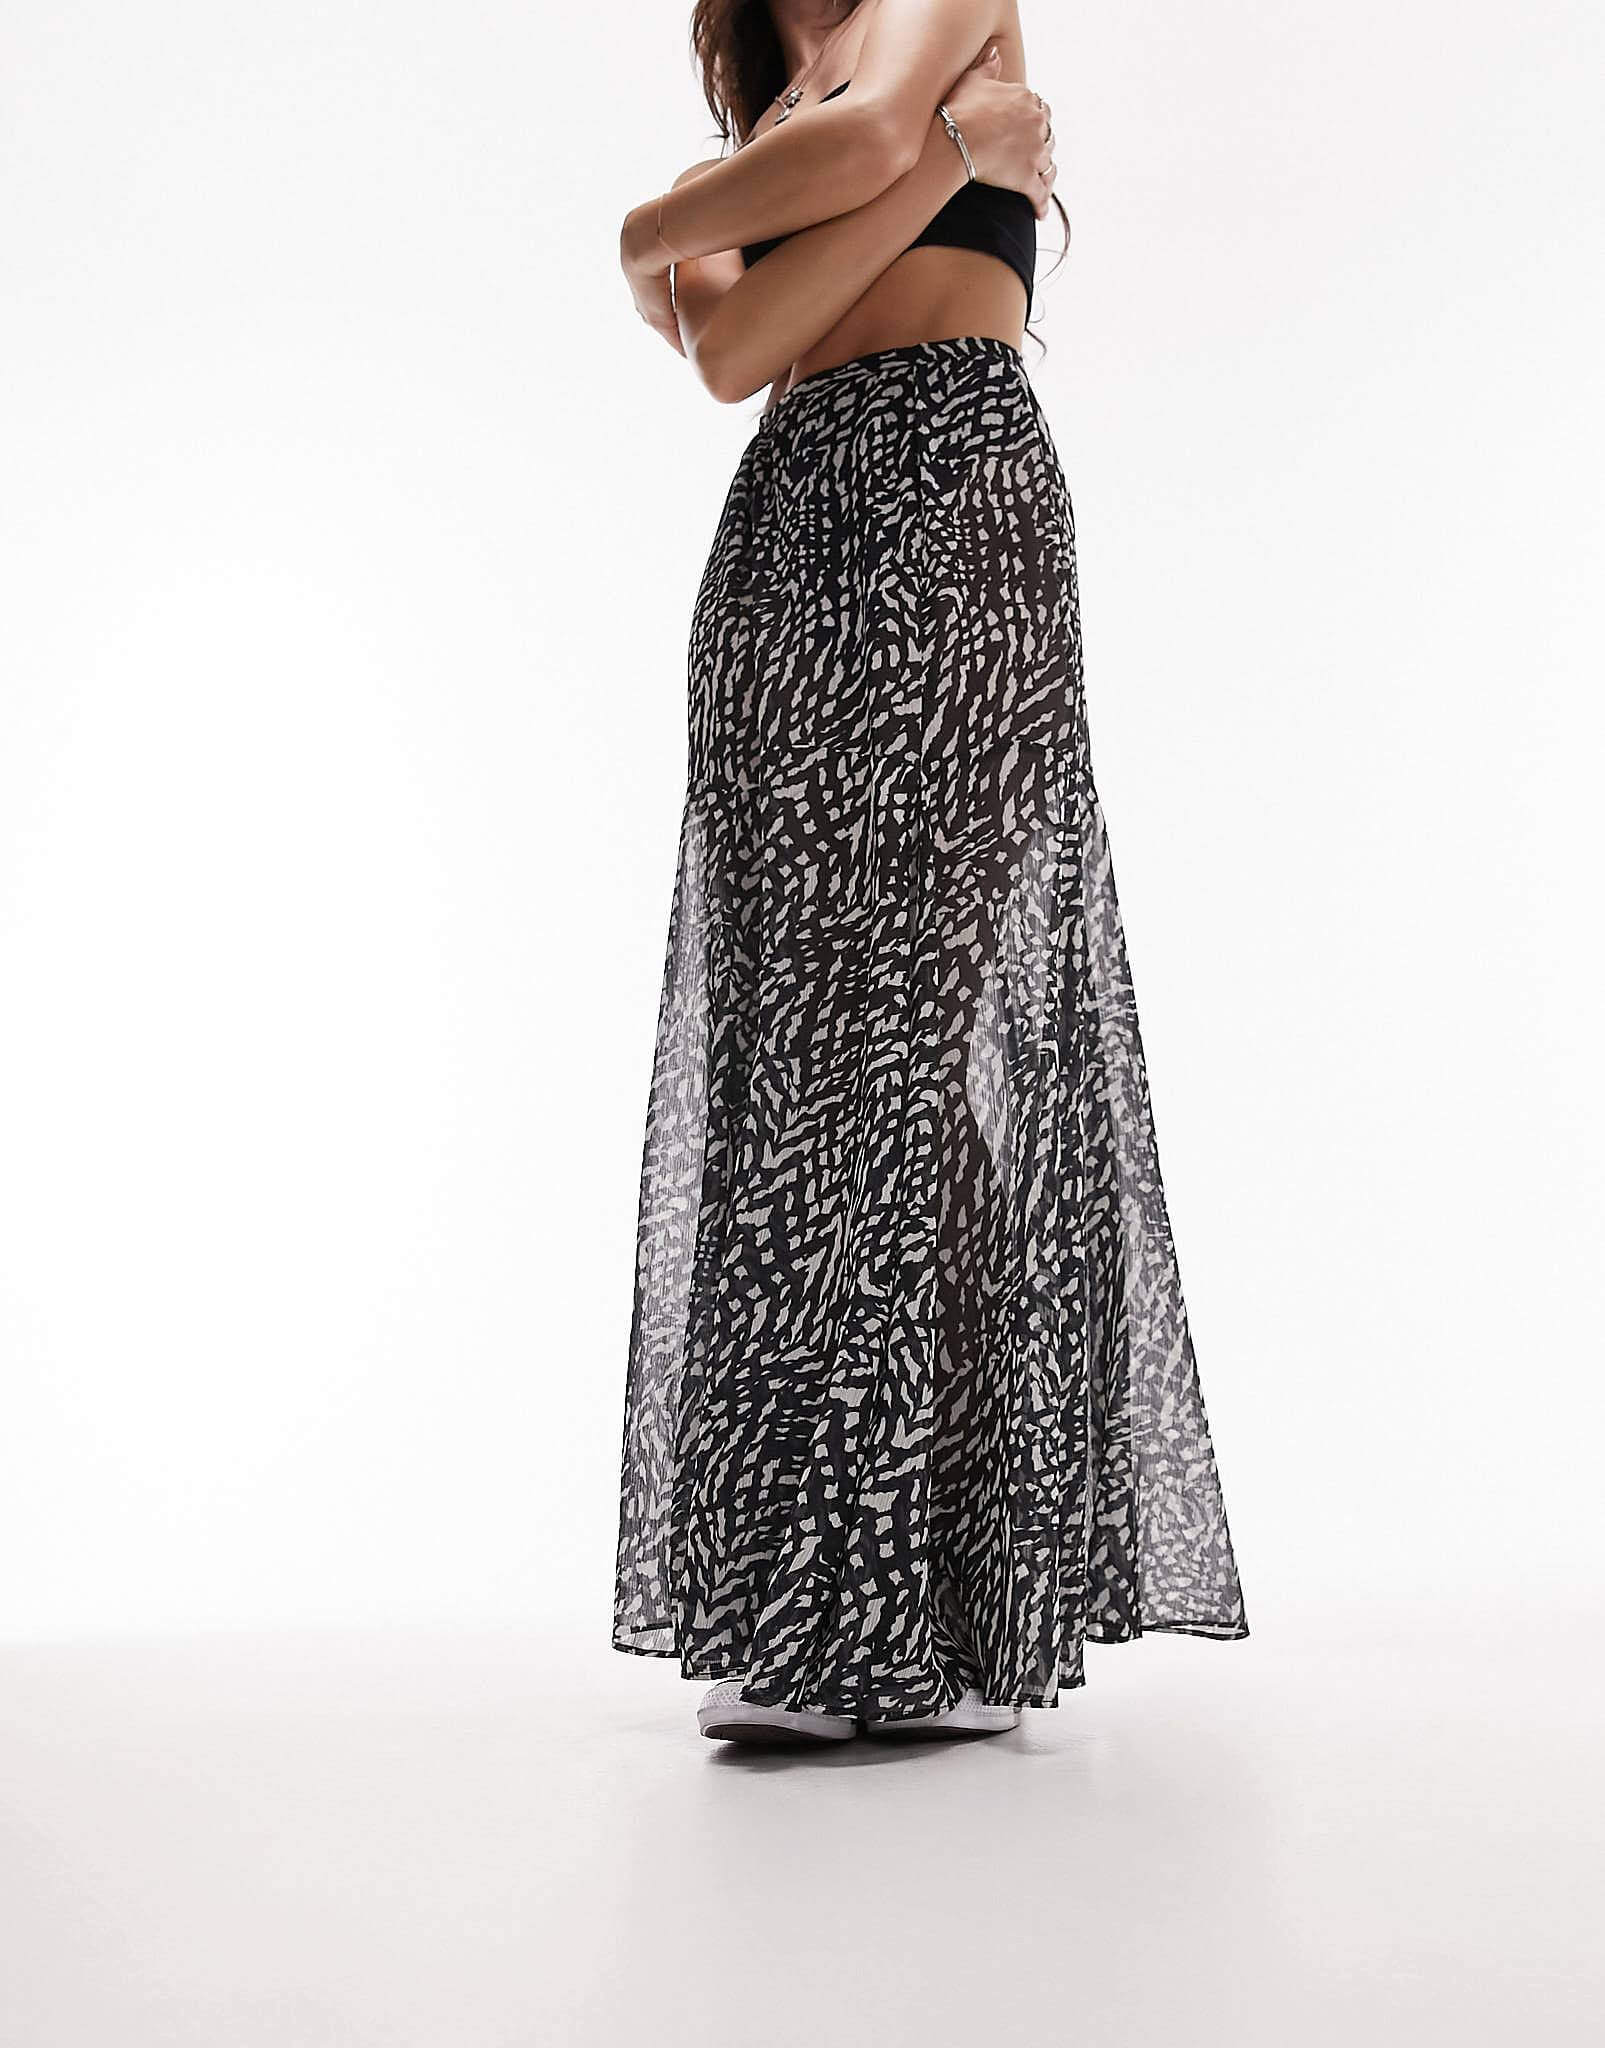 Юбка Topshop Printed Sheer Maxi, черный/белый женская длинная юбка celmia осенняя богемная юбка макси с цветочным принтом и высокой талией винтажная повседневная свободная бандажная юбк